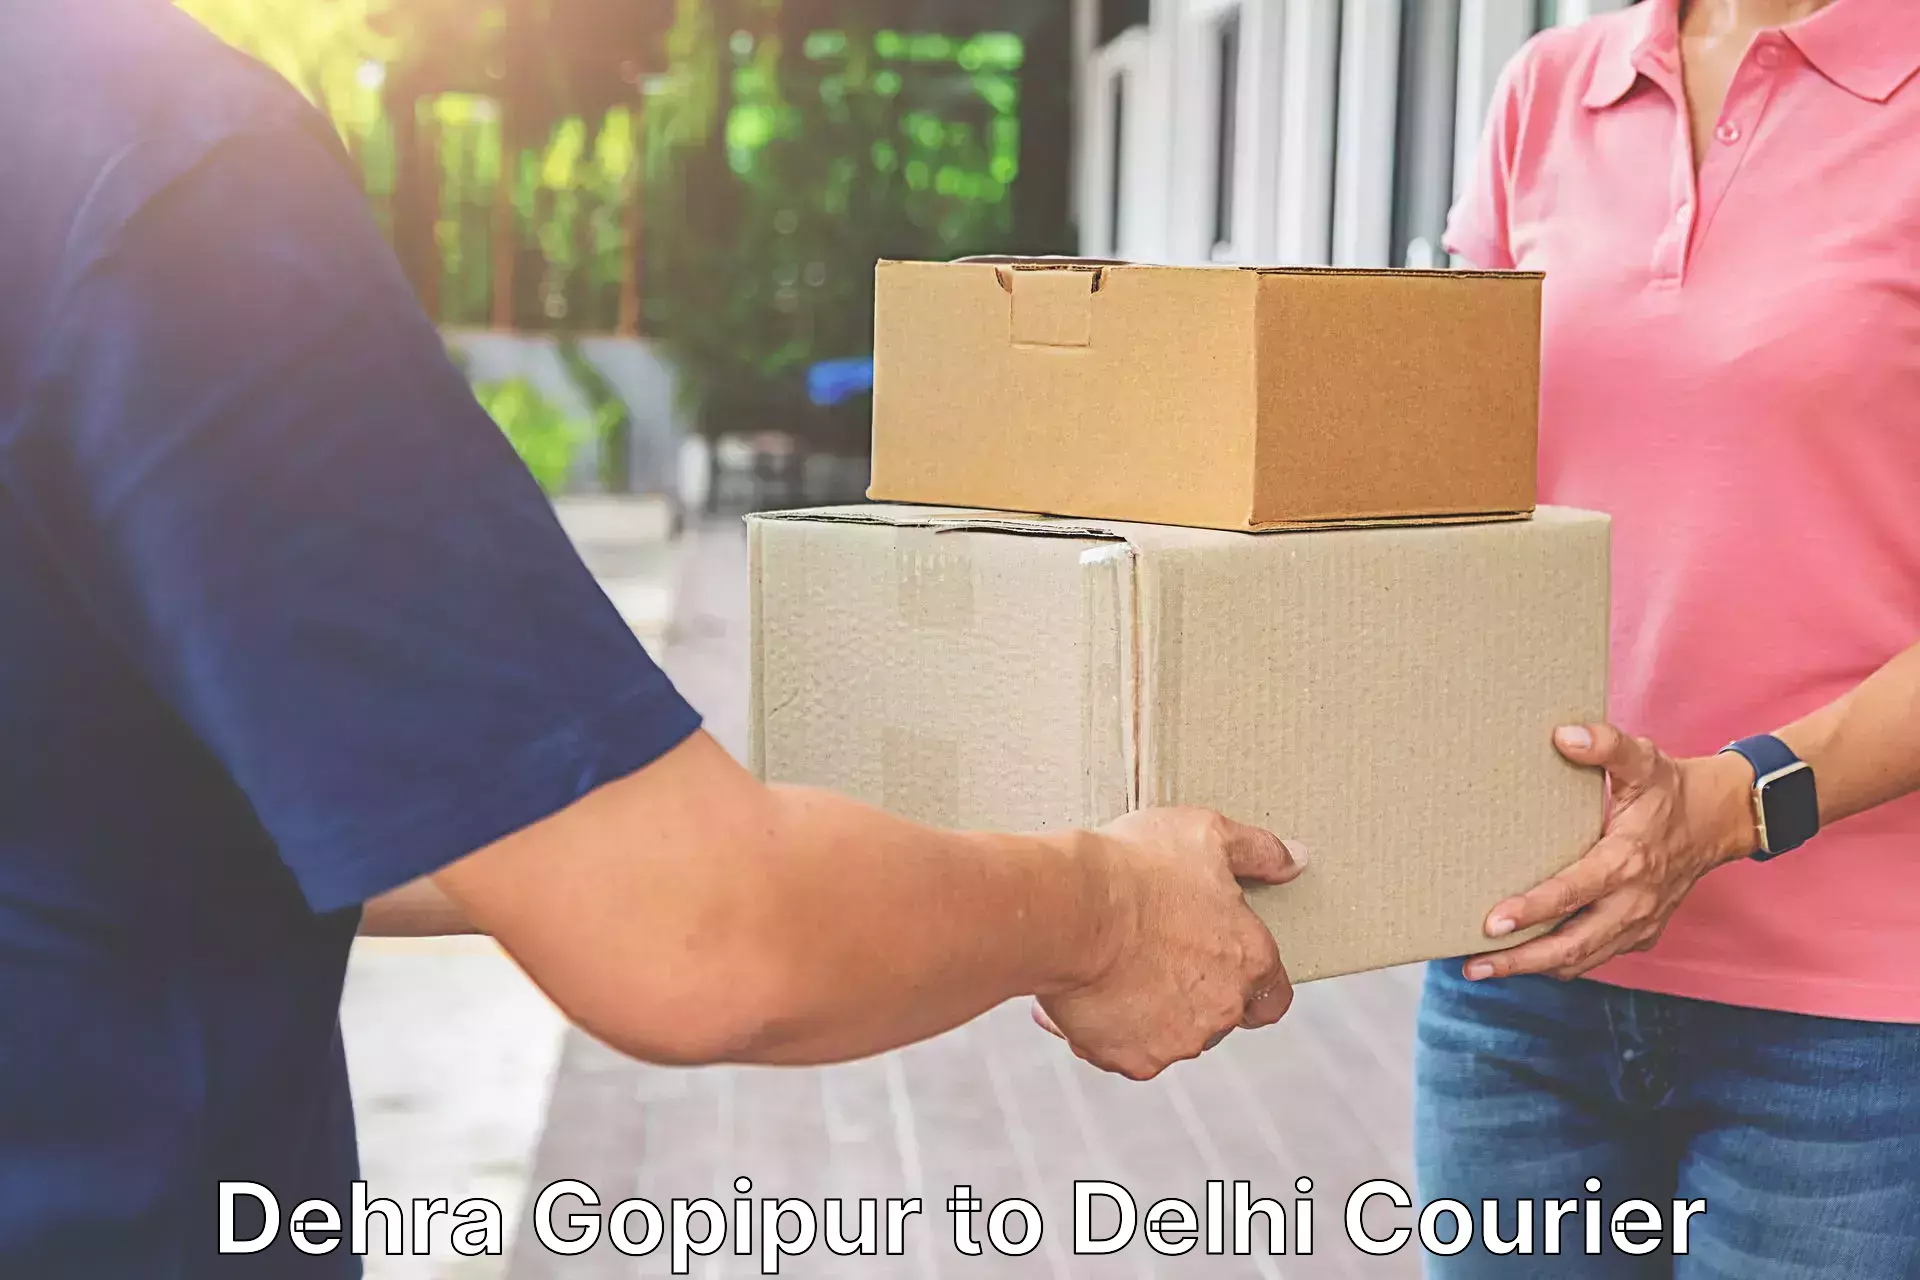 Reliable parcel services Dehra Gopipur to Delhi